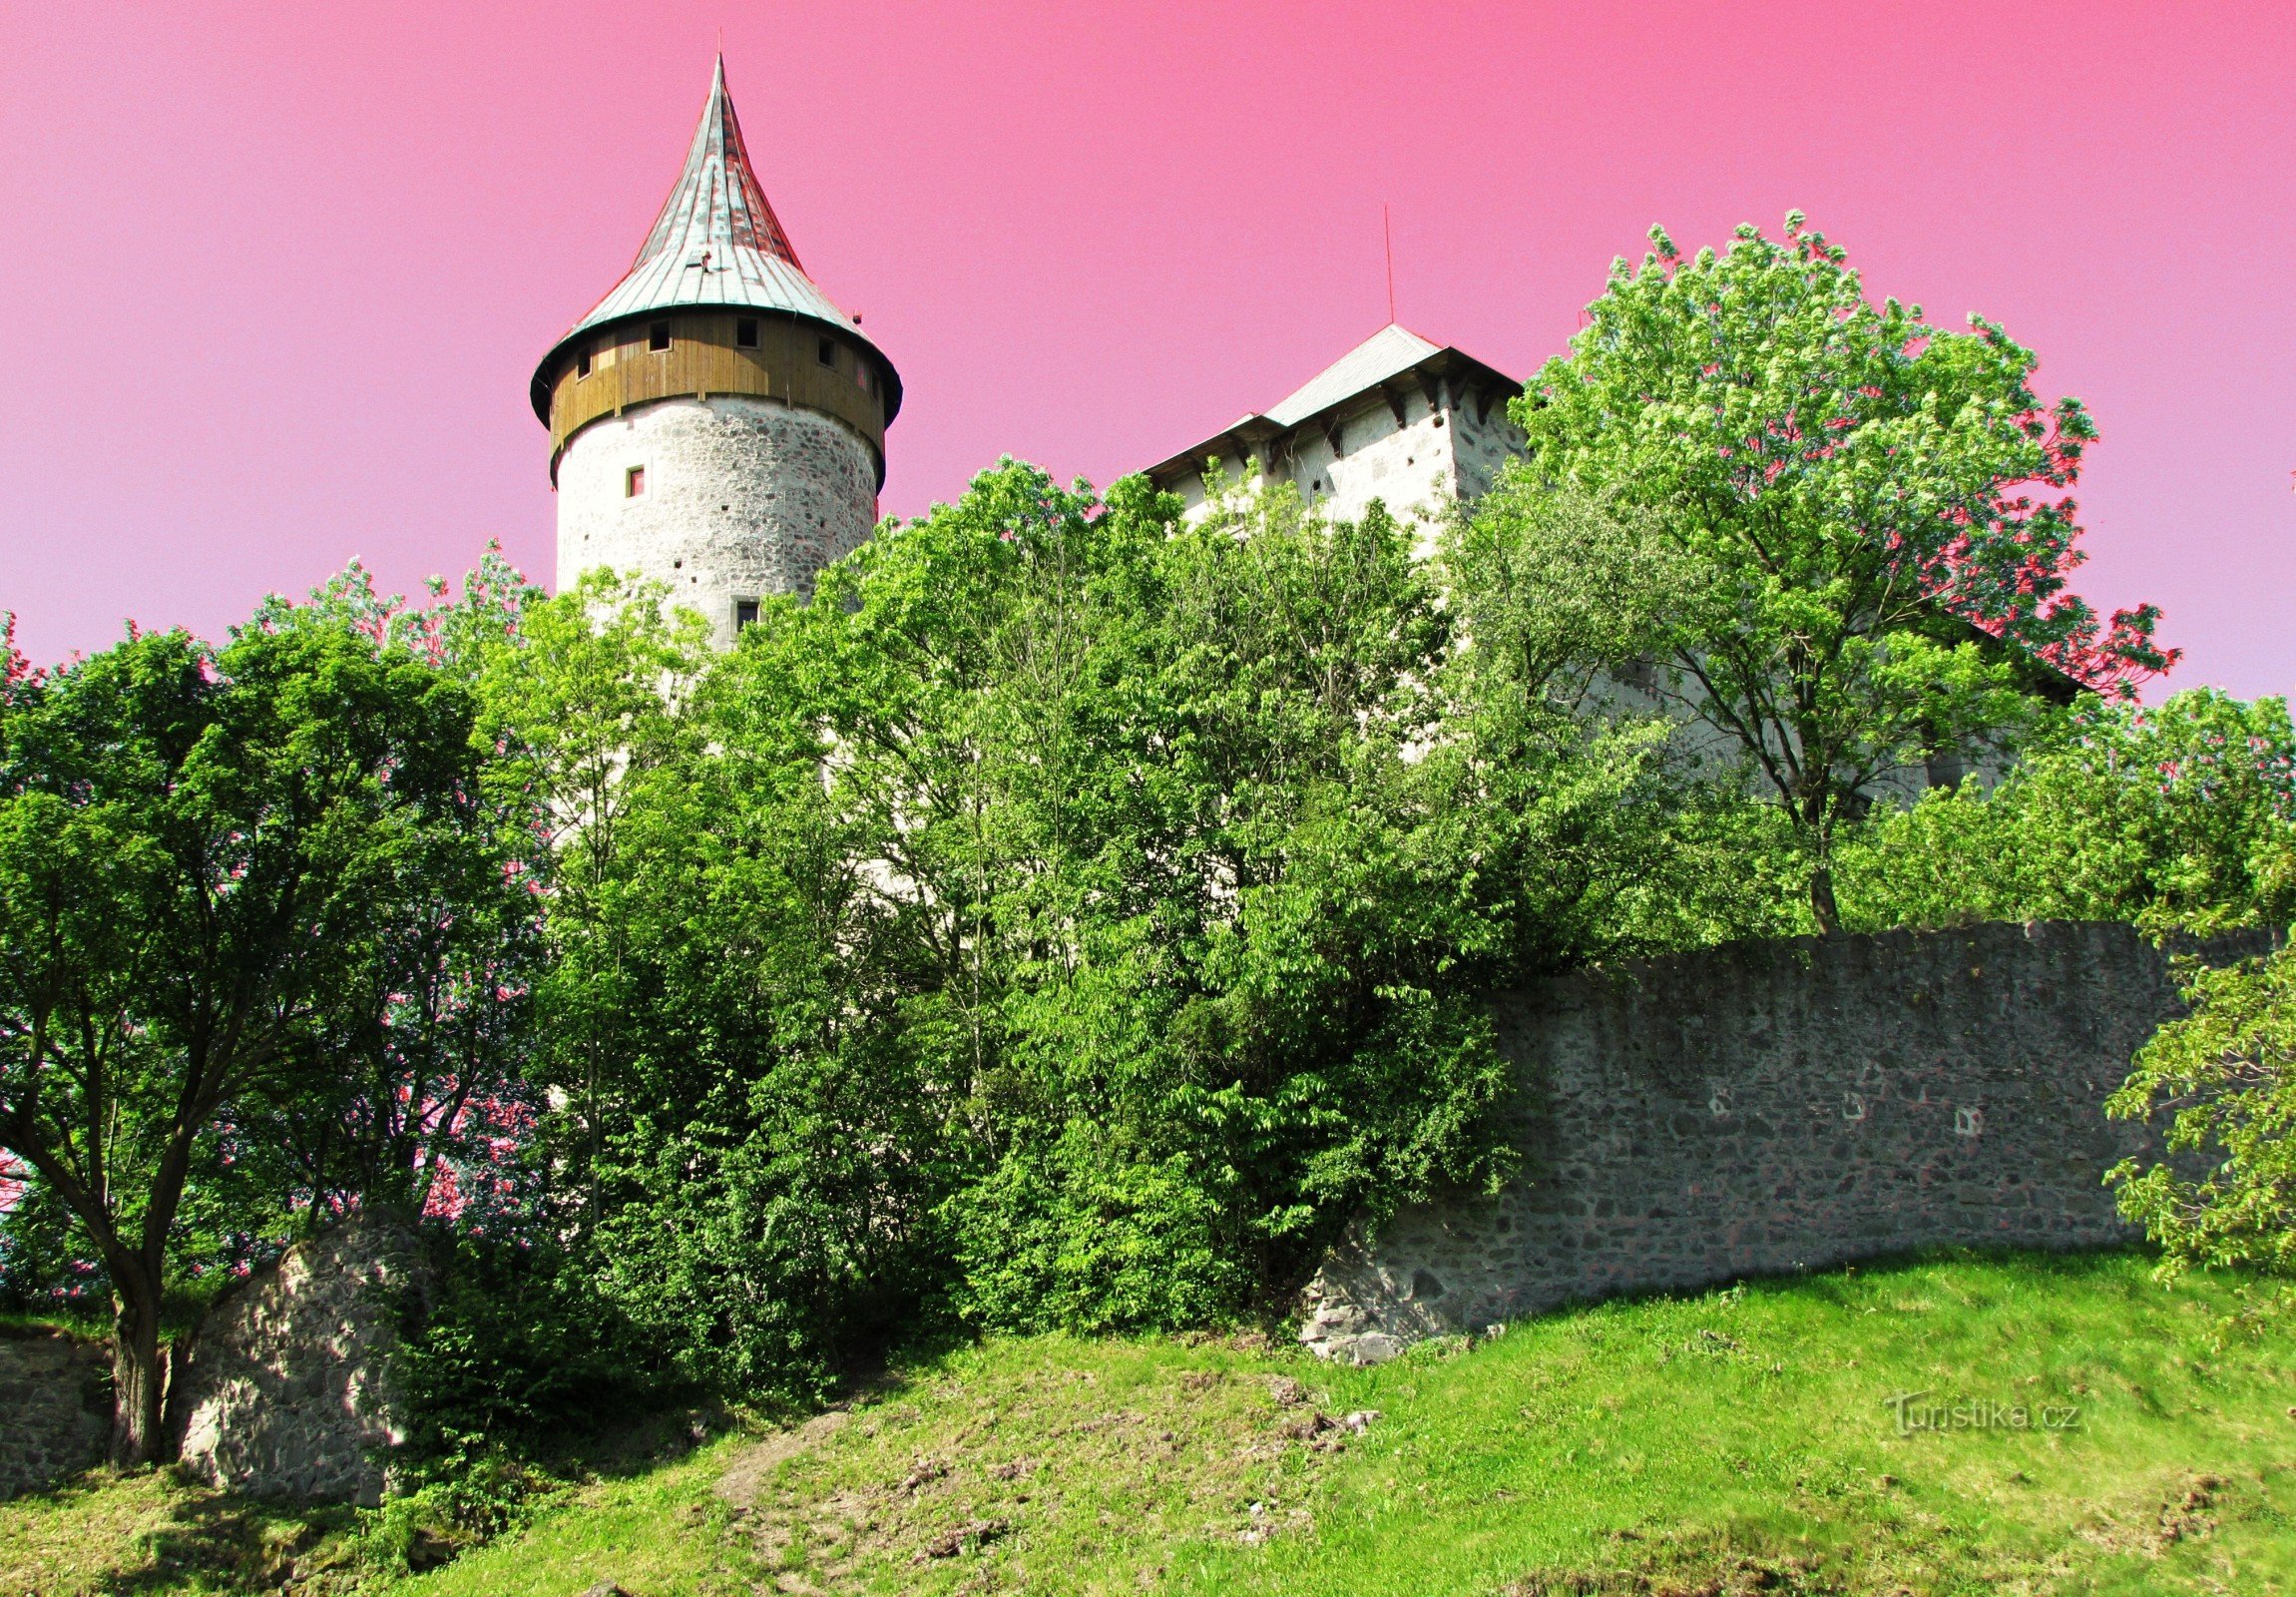 Après un peu d'histoire au château - Kunětická hora